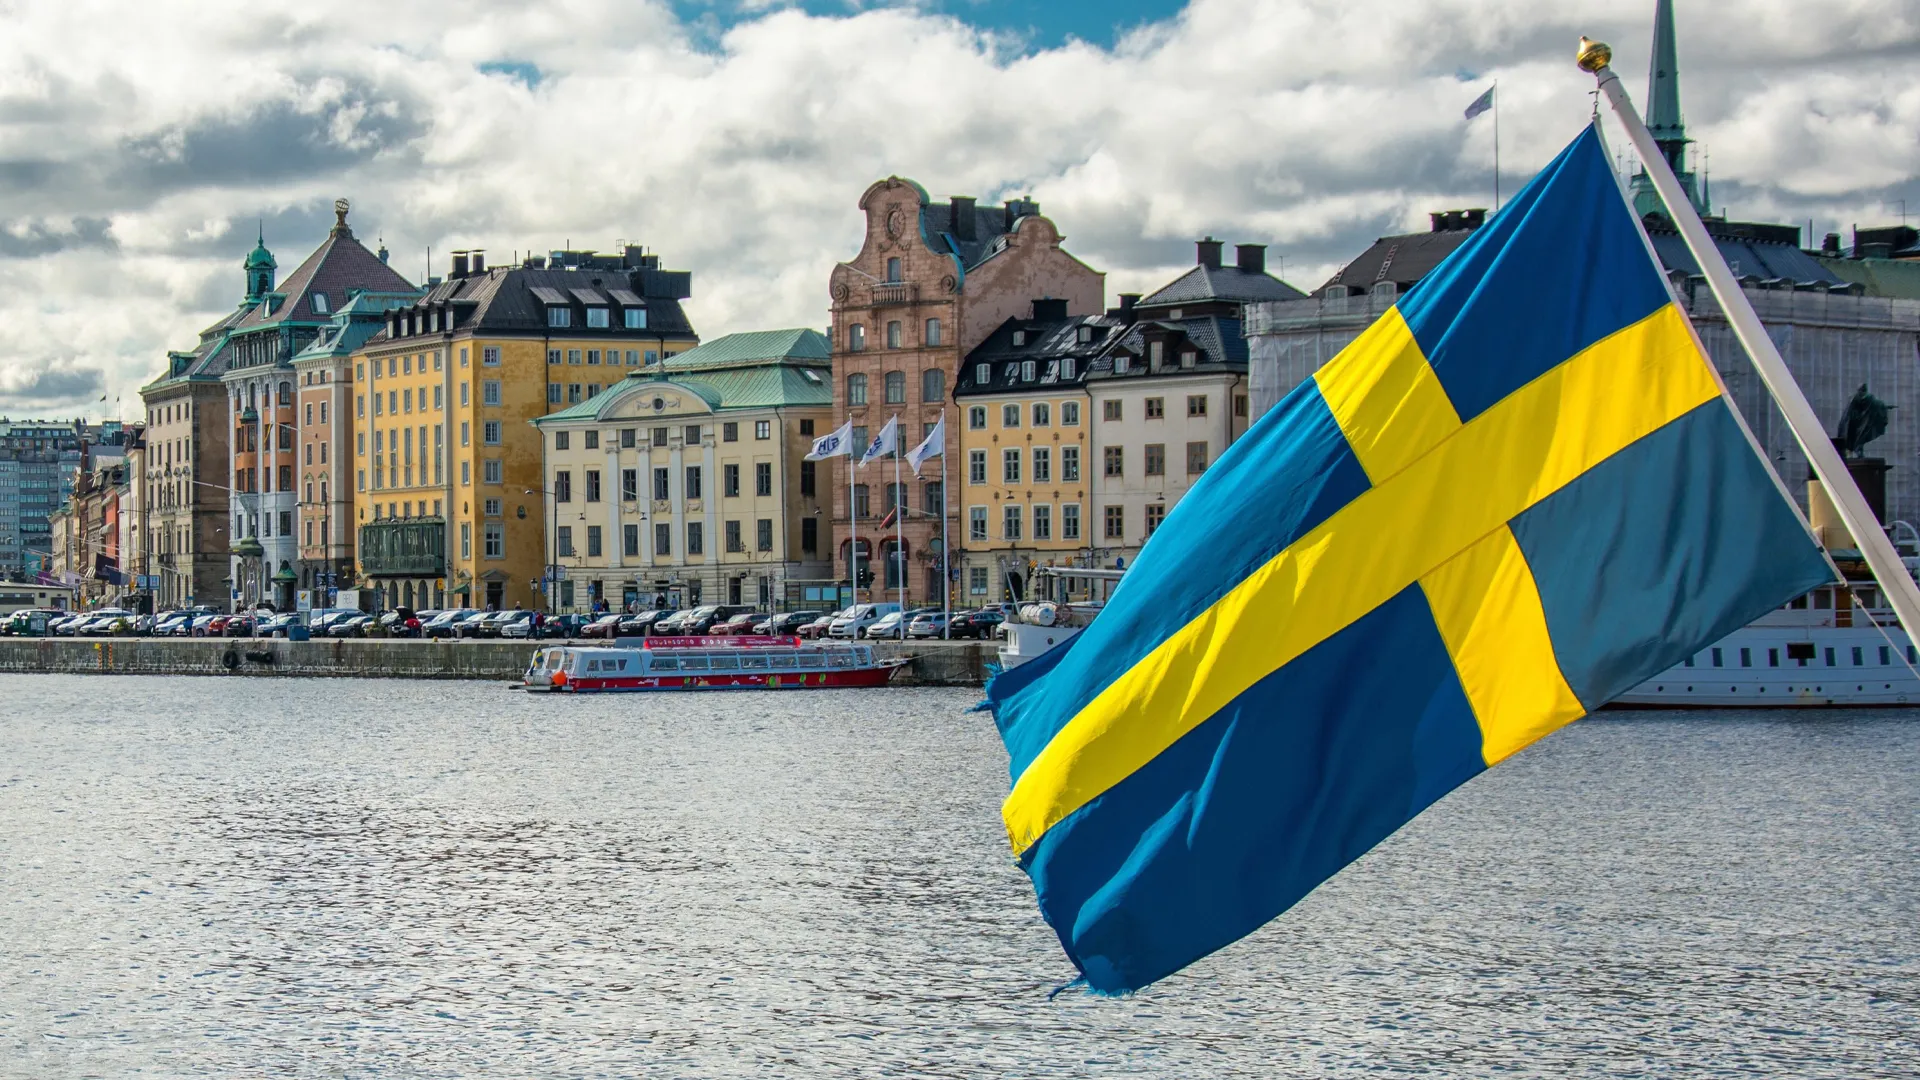 سلطات "السويد" تعتزم تخفيض المزايا الاجتماعية للاجئين للحد من قدومهم إلى البلاد